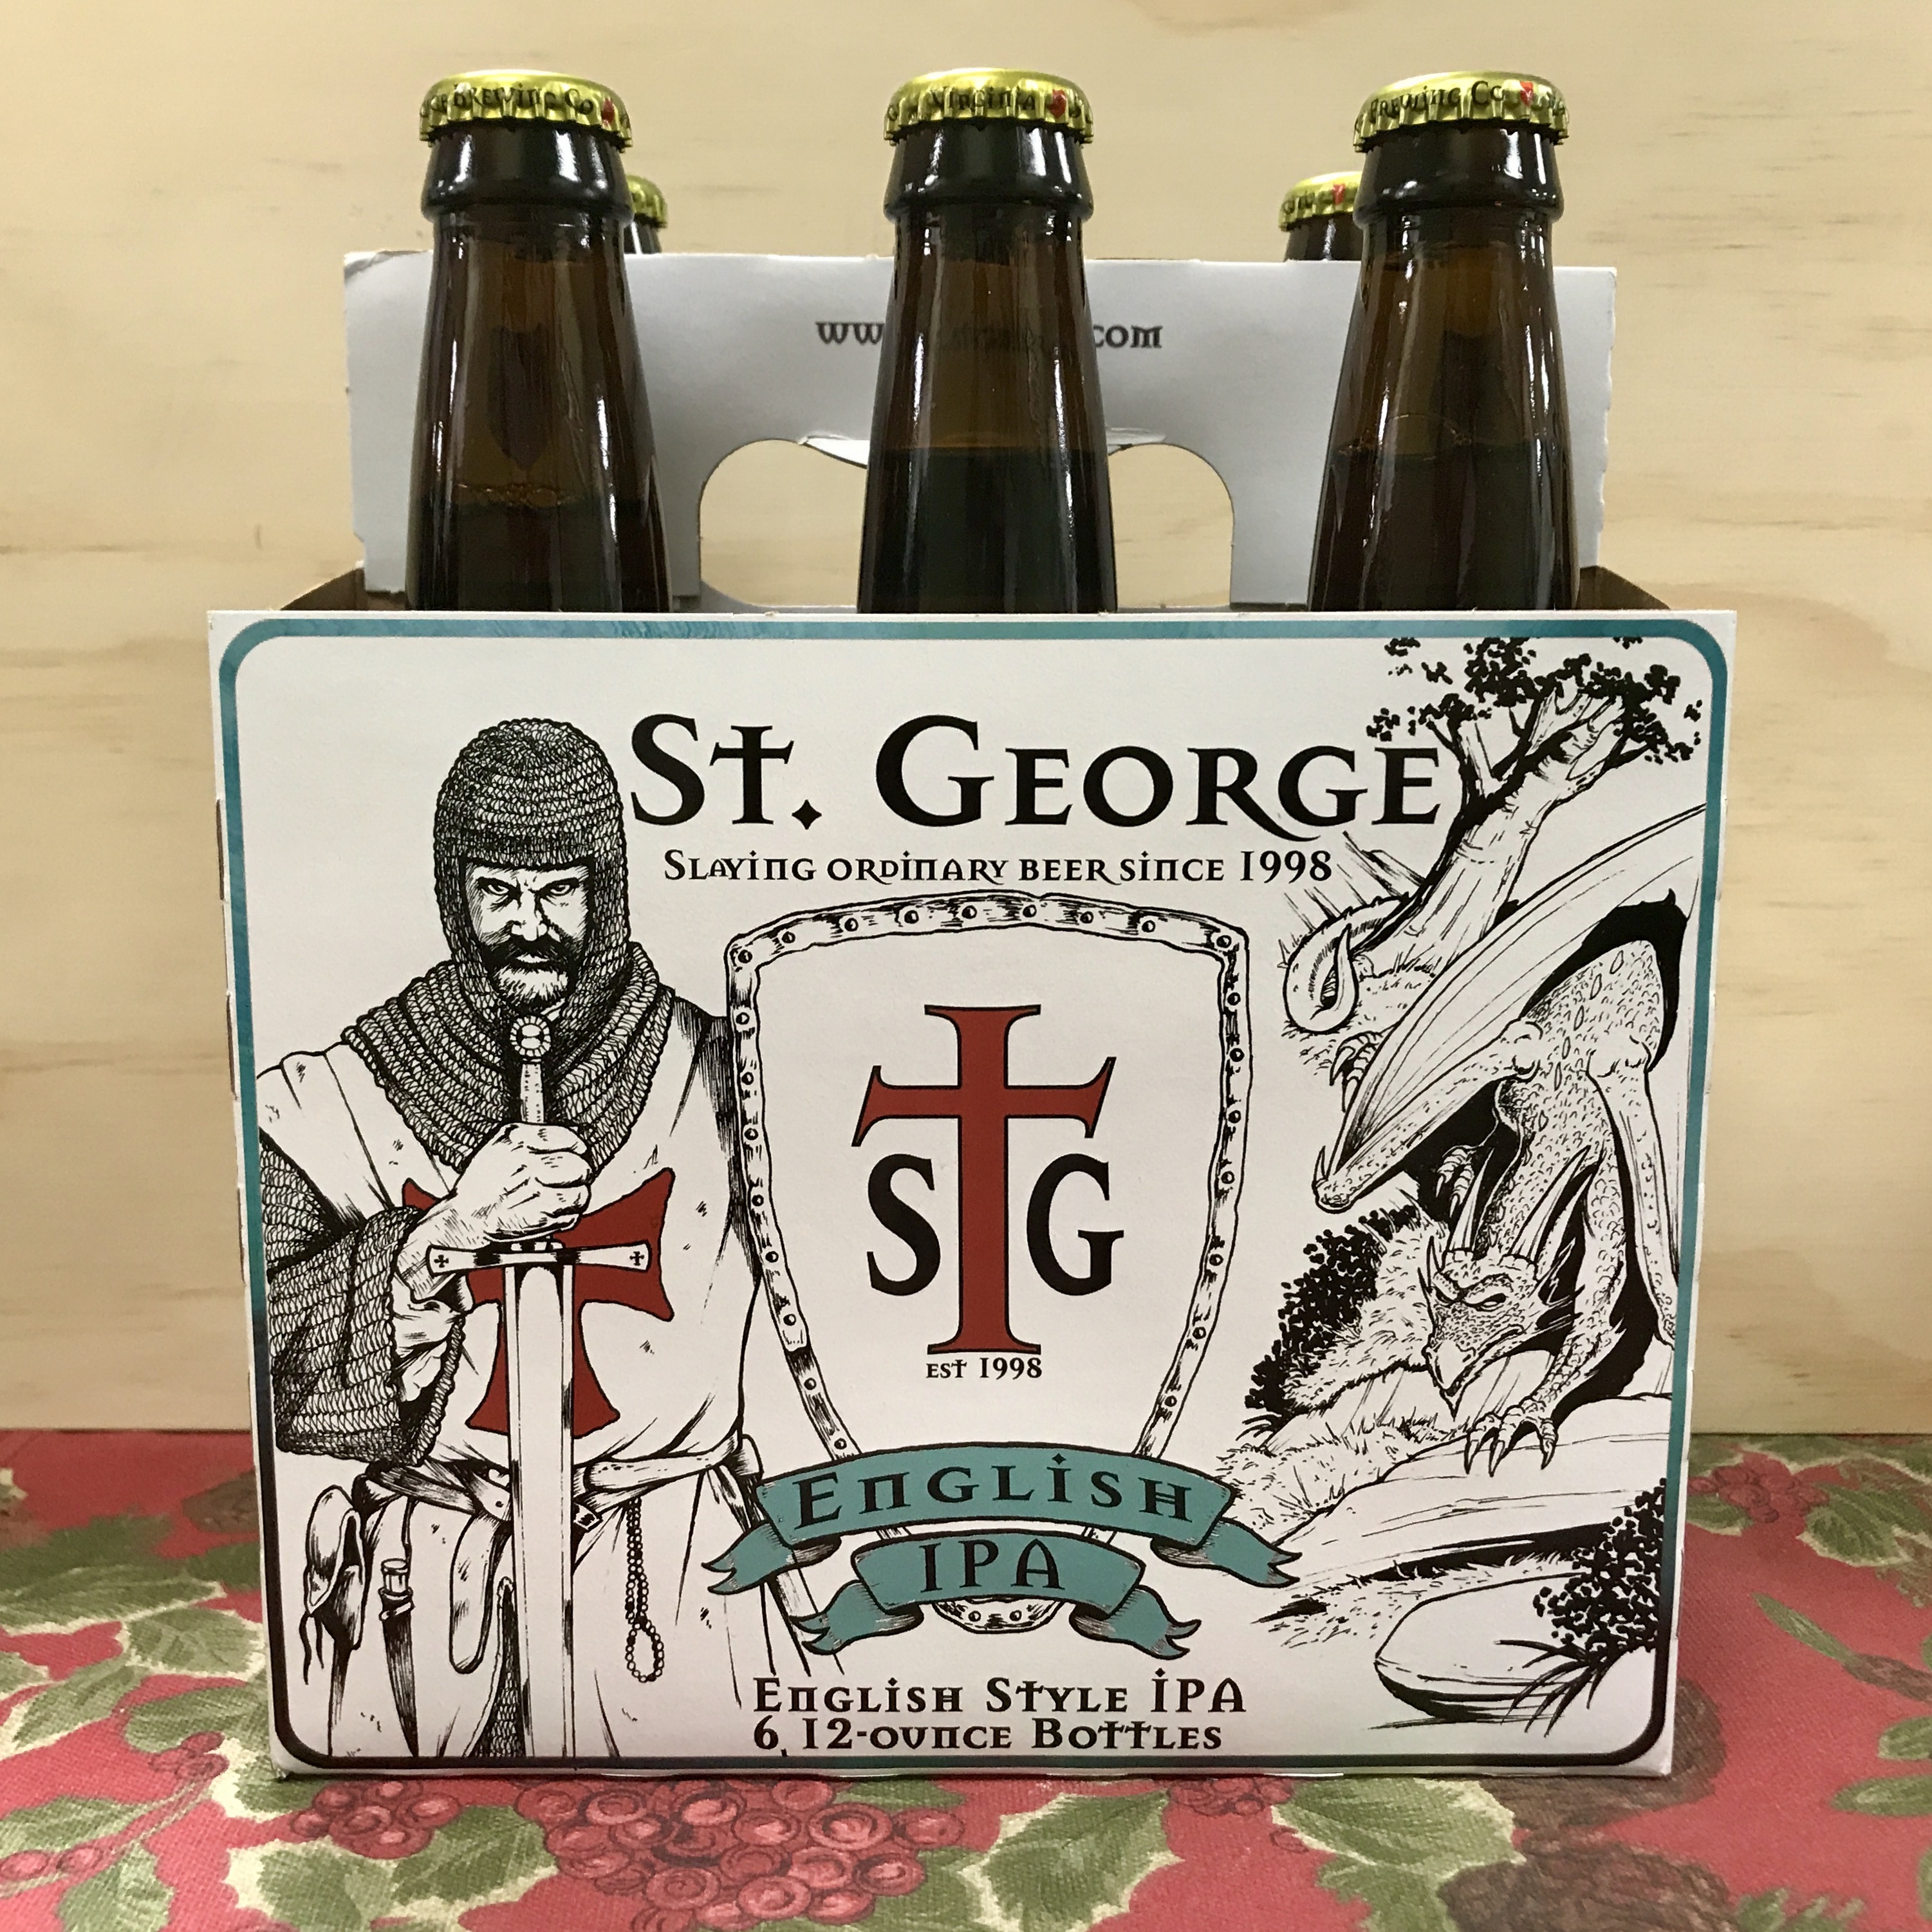 St.George English Style IPA 6 x 12 oz bottles